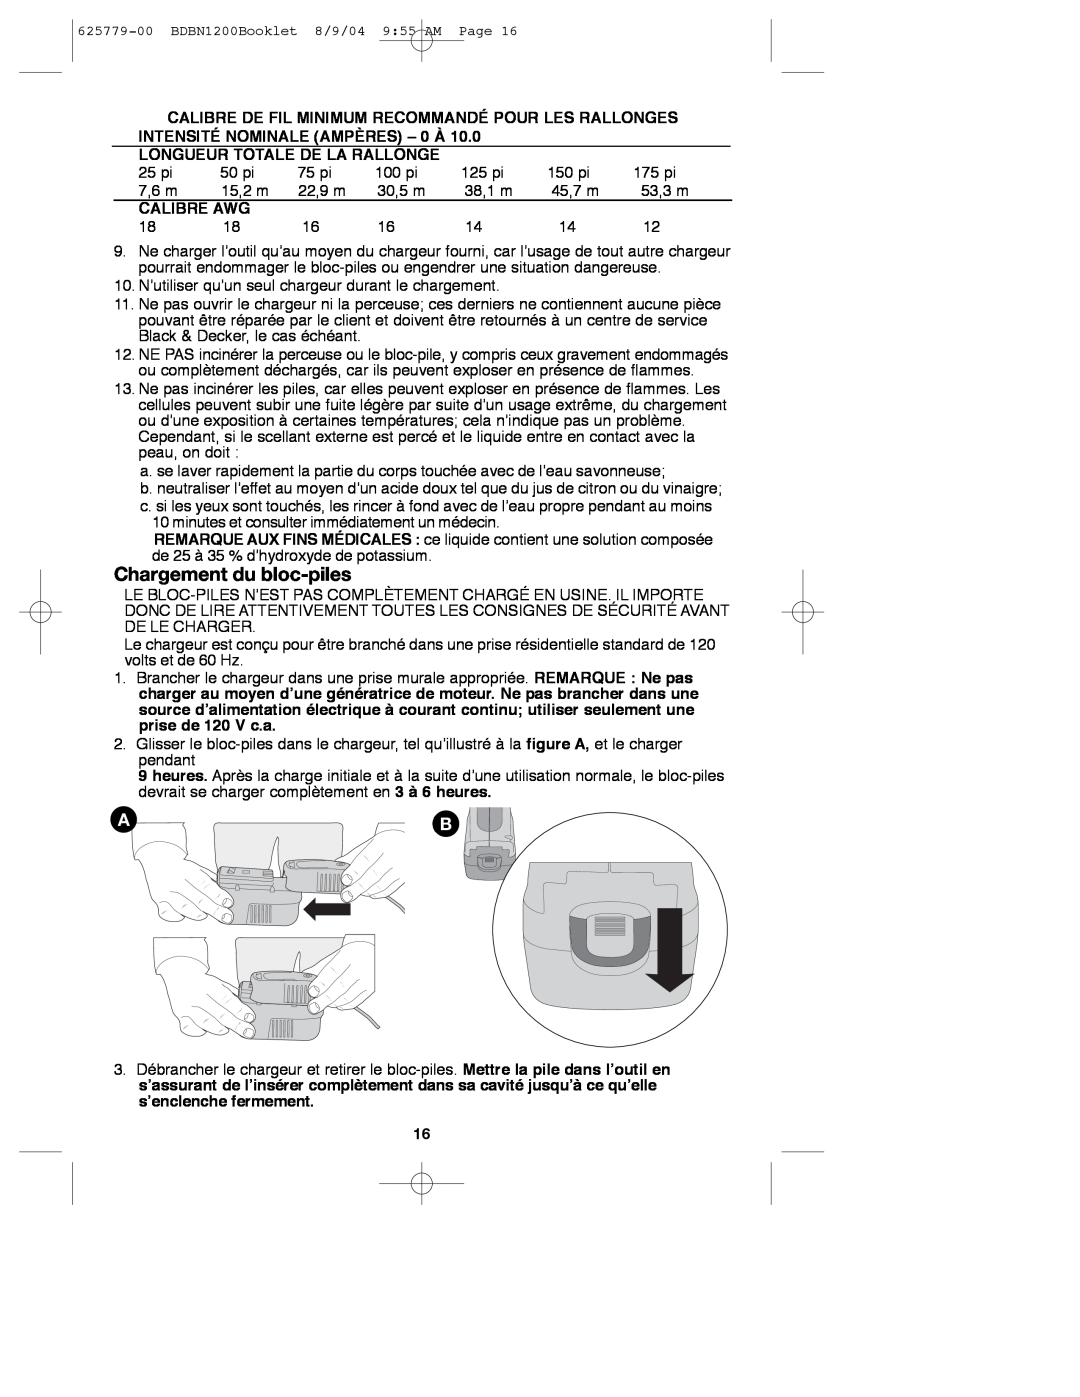 Black & Decker 625779-00, BDBN1200 instruction manual Chargement du bloc-piles, Longueur Totale De La Rallonge, Calibre Awg 